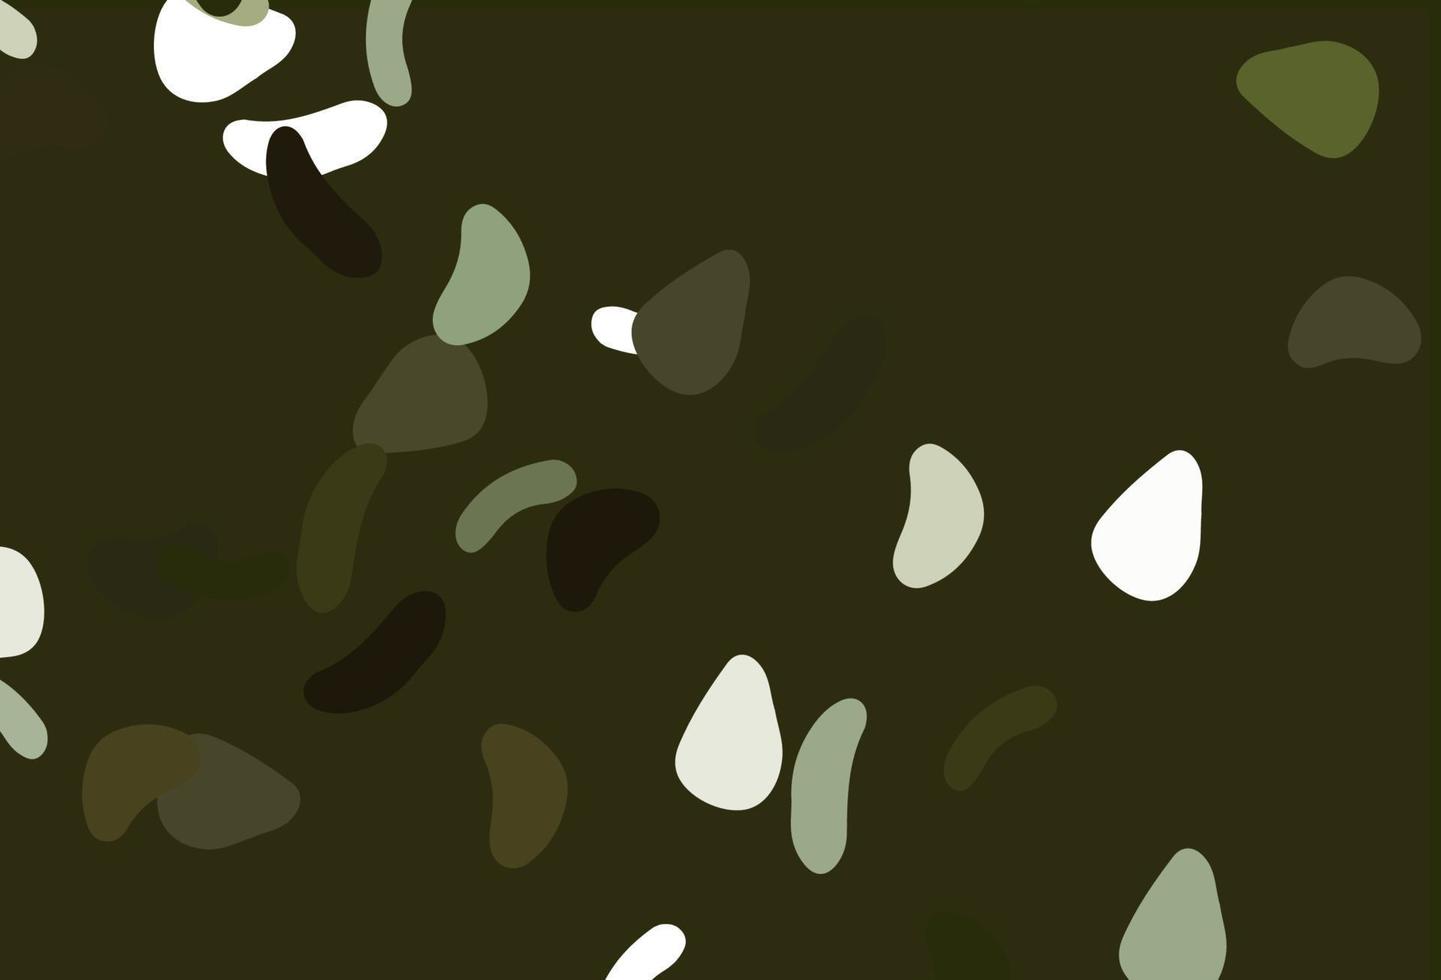 textura de vetor verde claro com formas aleatórias.